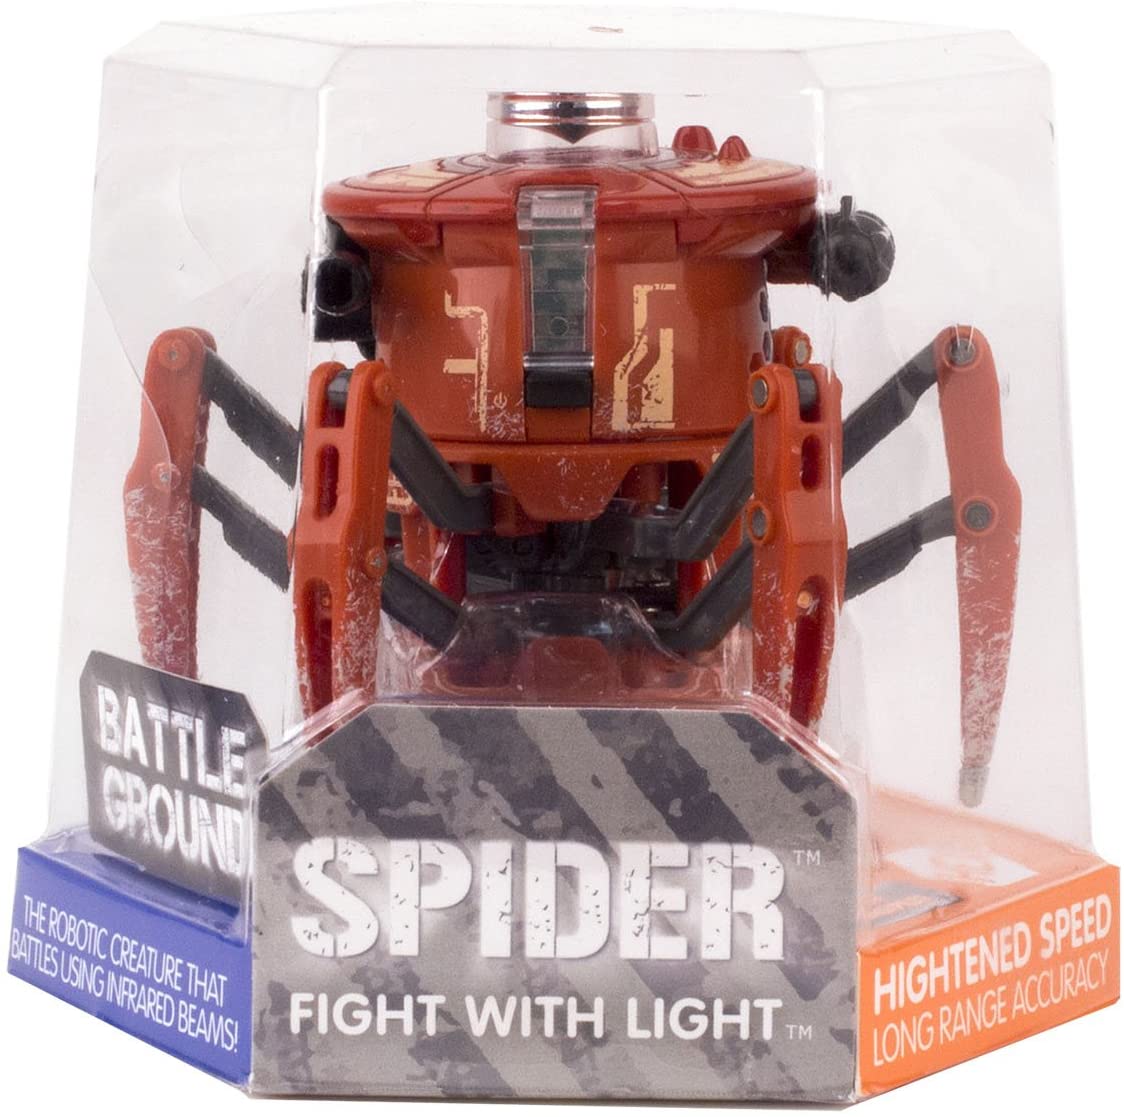 battle ground spider hexbug